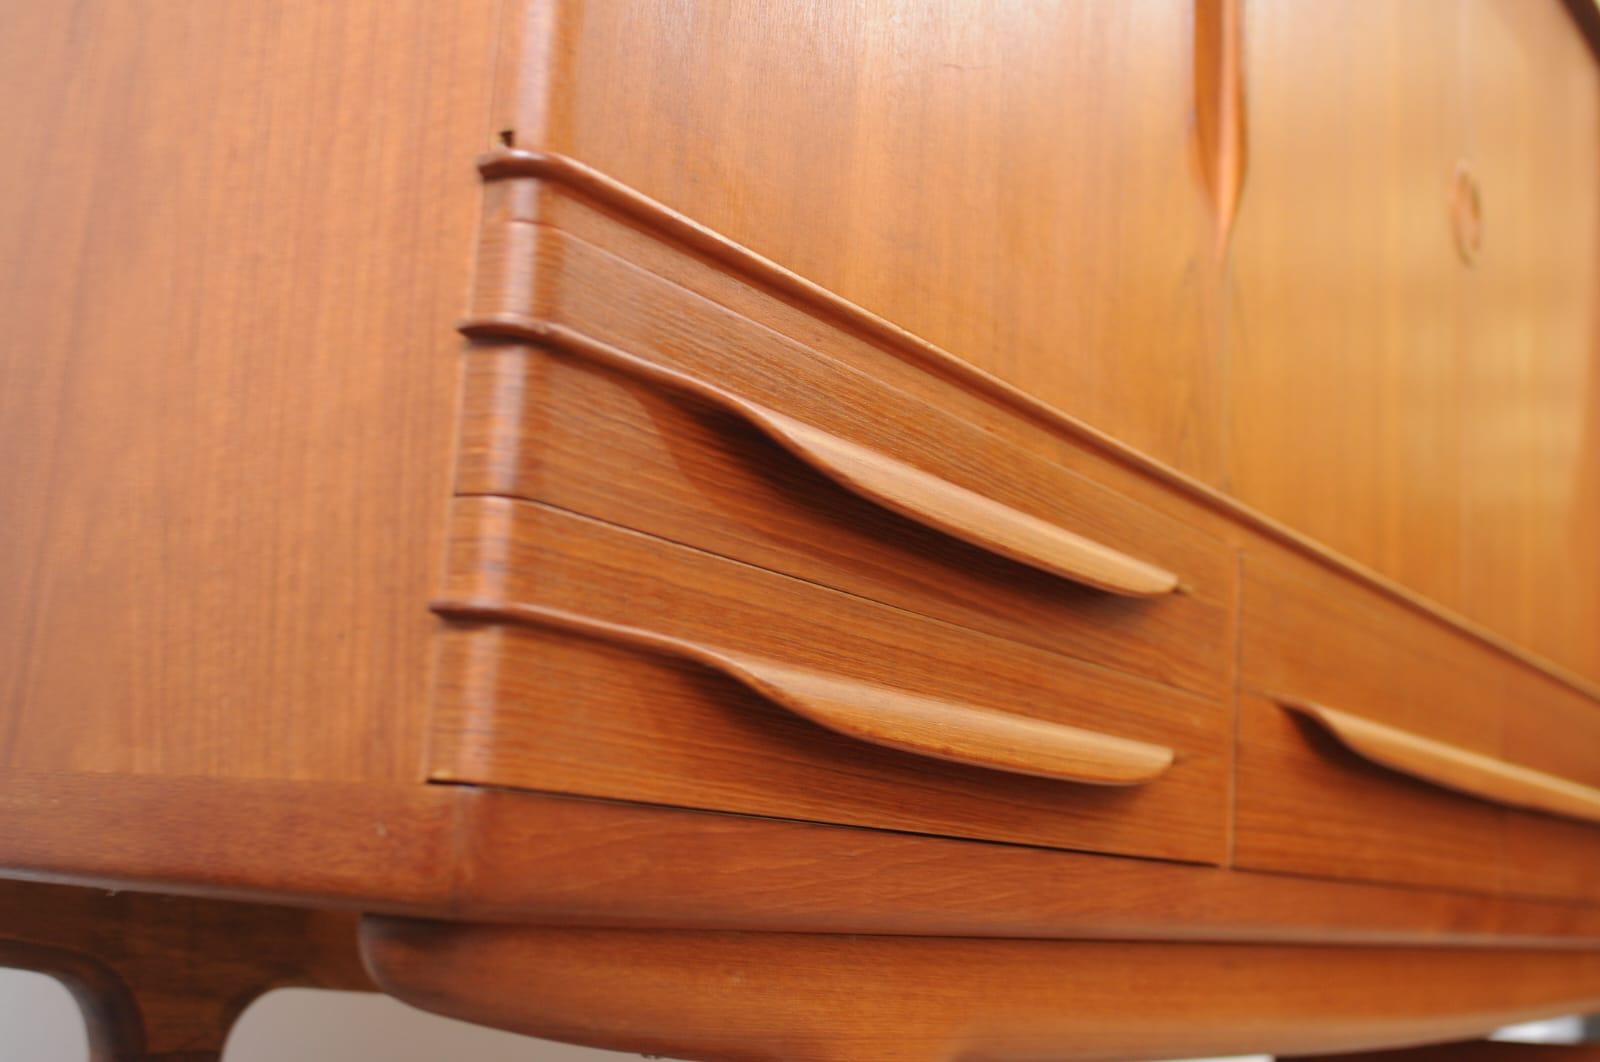 1960sd Sideboard von Sejling Skabe, entworfen von EW Bach in Dänemark
Massives Palisanderholz, inklusive Barschrankablage

Diese Anrichte ist ein ikonisches Beispiel für dänische Möbel aus der Mitte des Jahrhunderts, sowohl in Bezug auf die